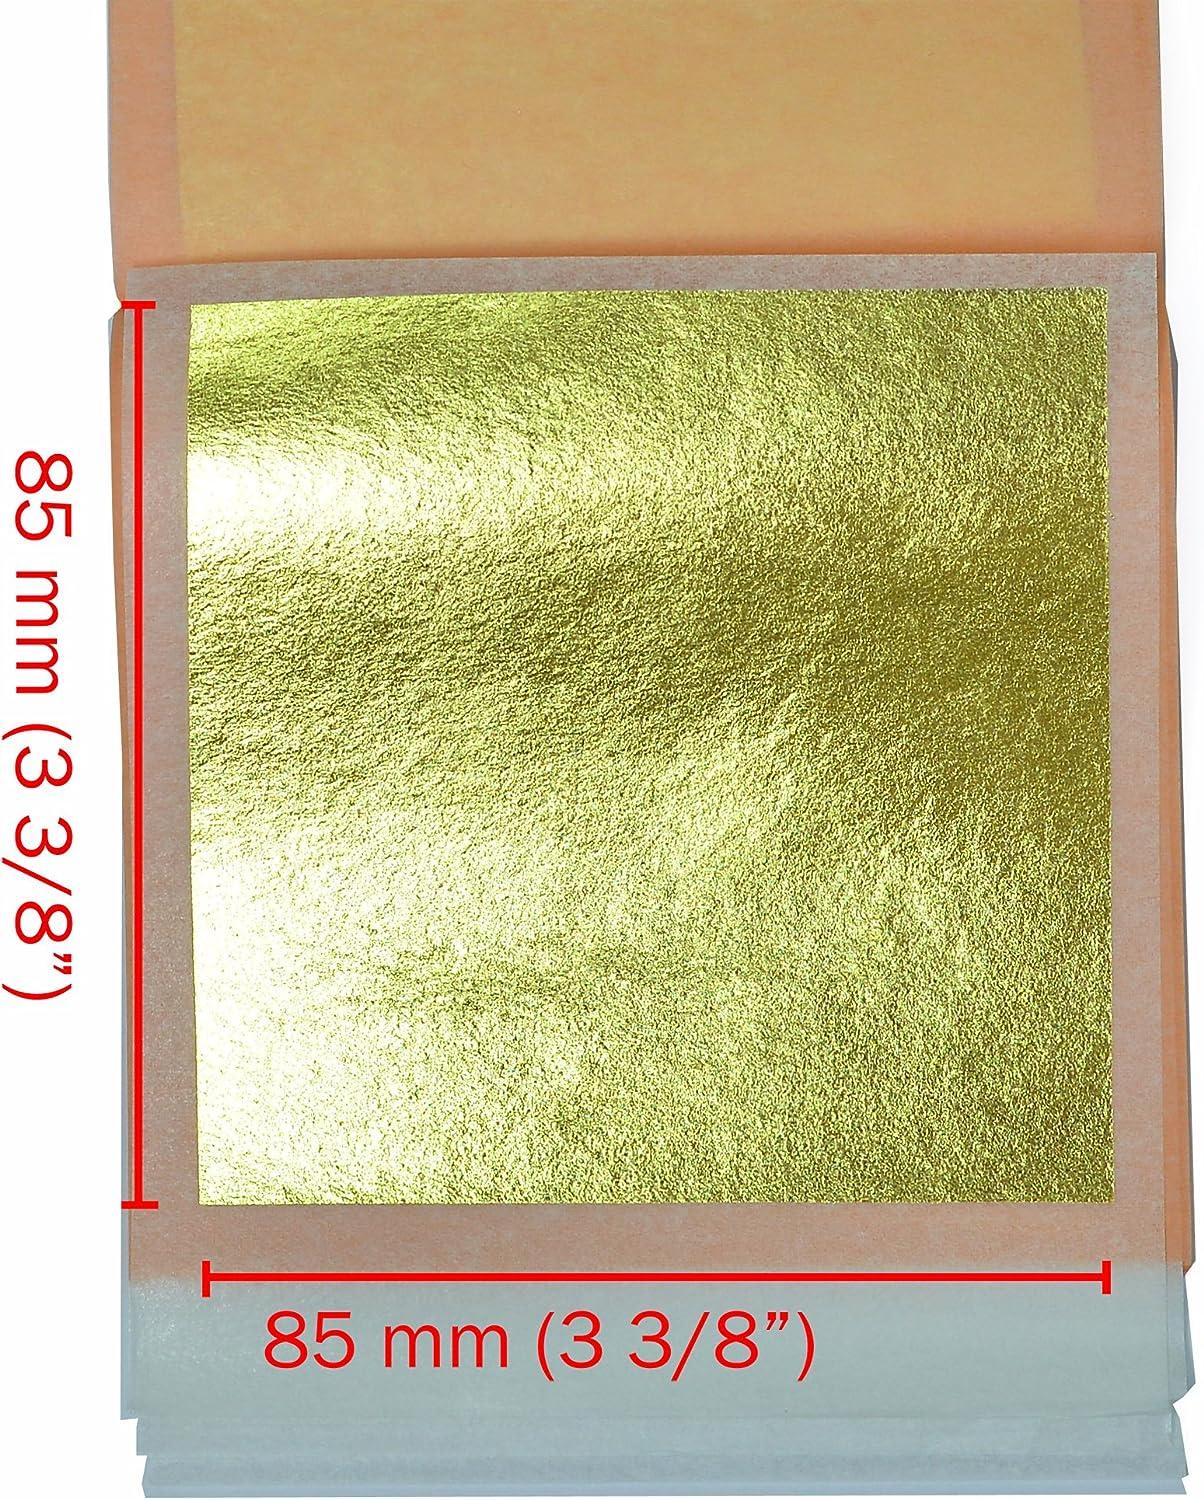 Edible Gold 23.75k Leaf Booklet 25 sheets